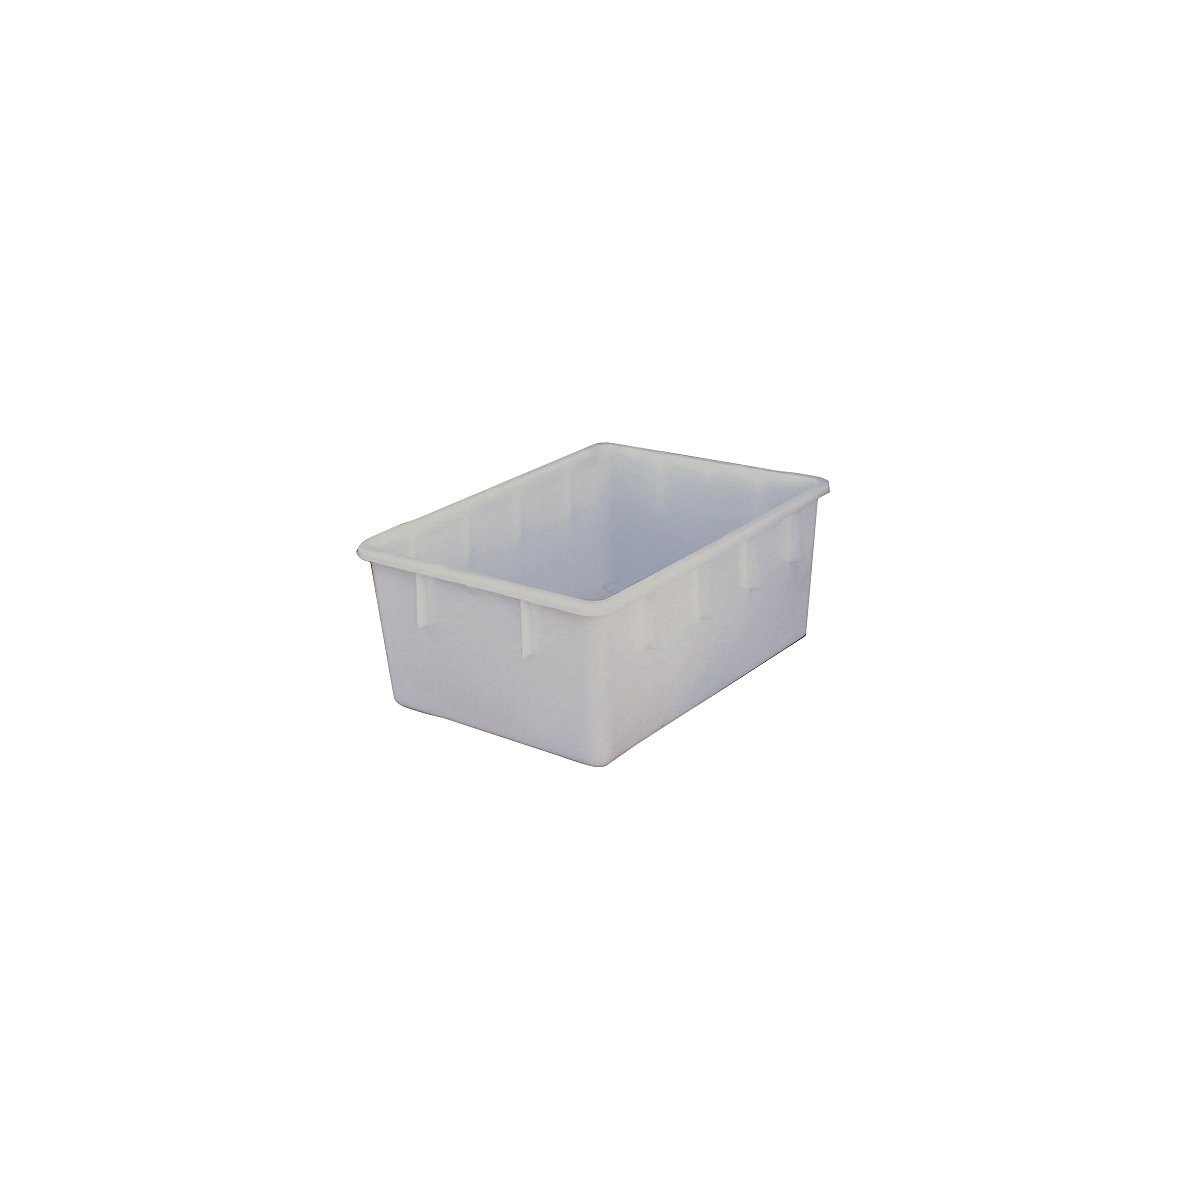 Stapelbehälter aus Polyethylen, konische Bauform, Volumen 160 l, natur-4